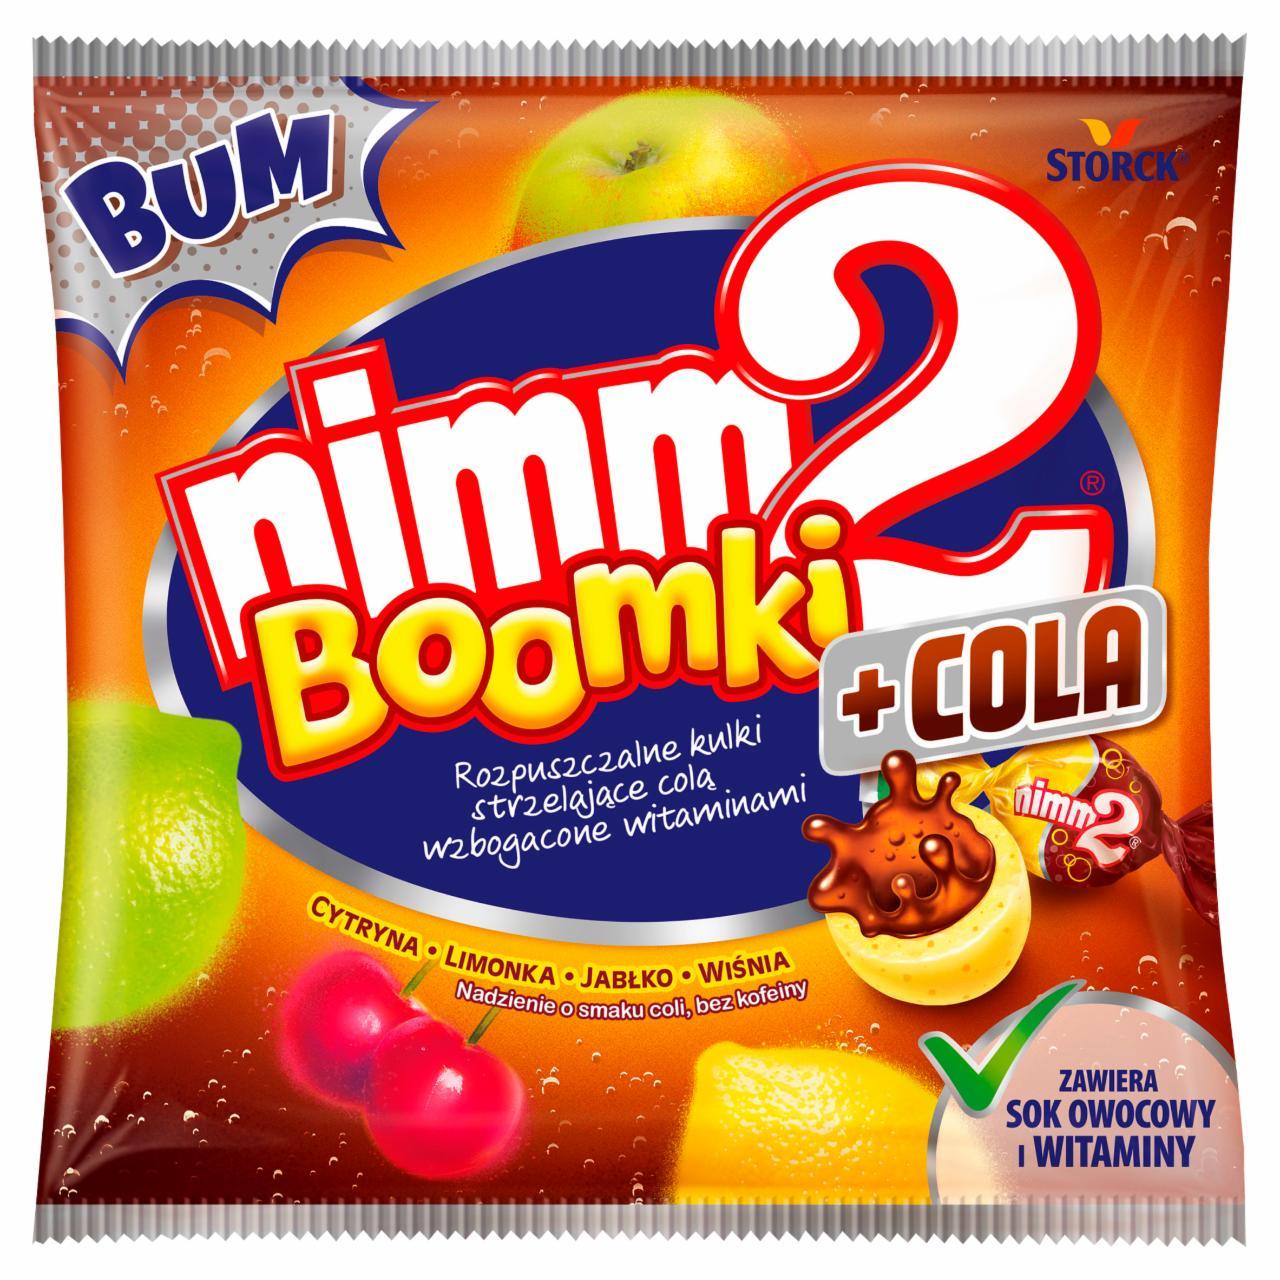 Zdjęcia - nimm2 Boomki + Cola Rozpuszczalne cukierki owocowe wzbogacone witaminami 90 g